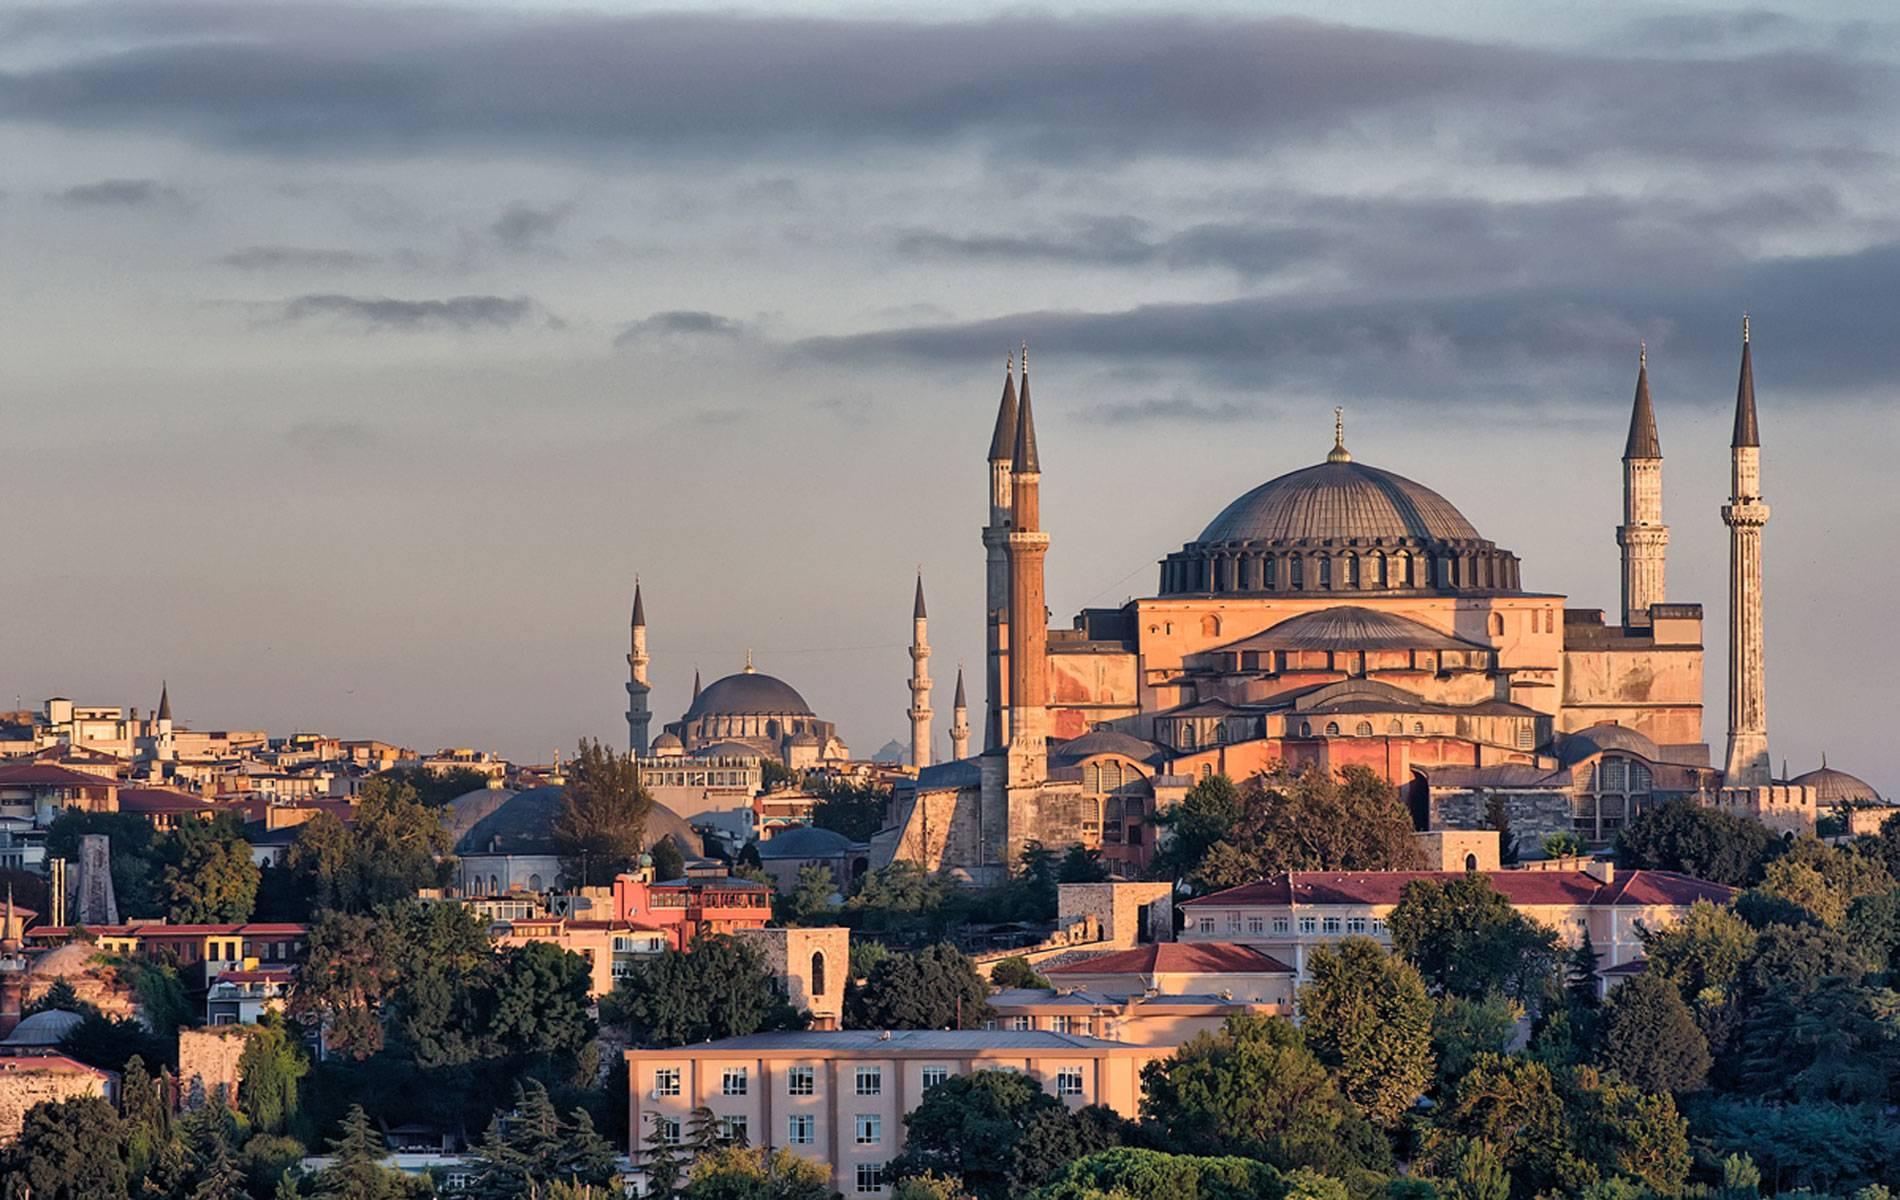 与蓝色清真寺隔街相望,这是一座土耳其著名的历史建筑,始建于公元325